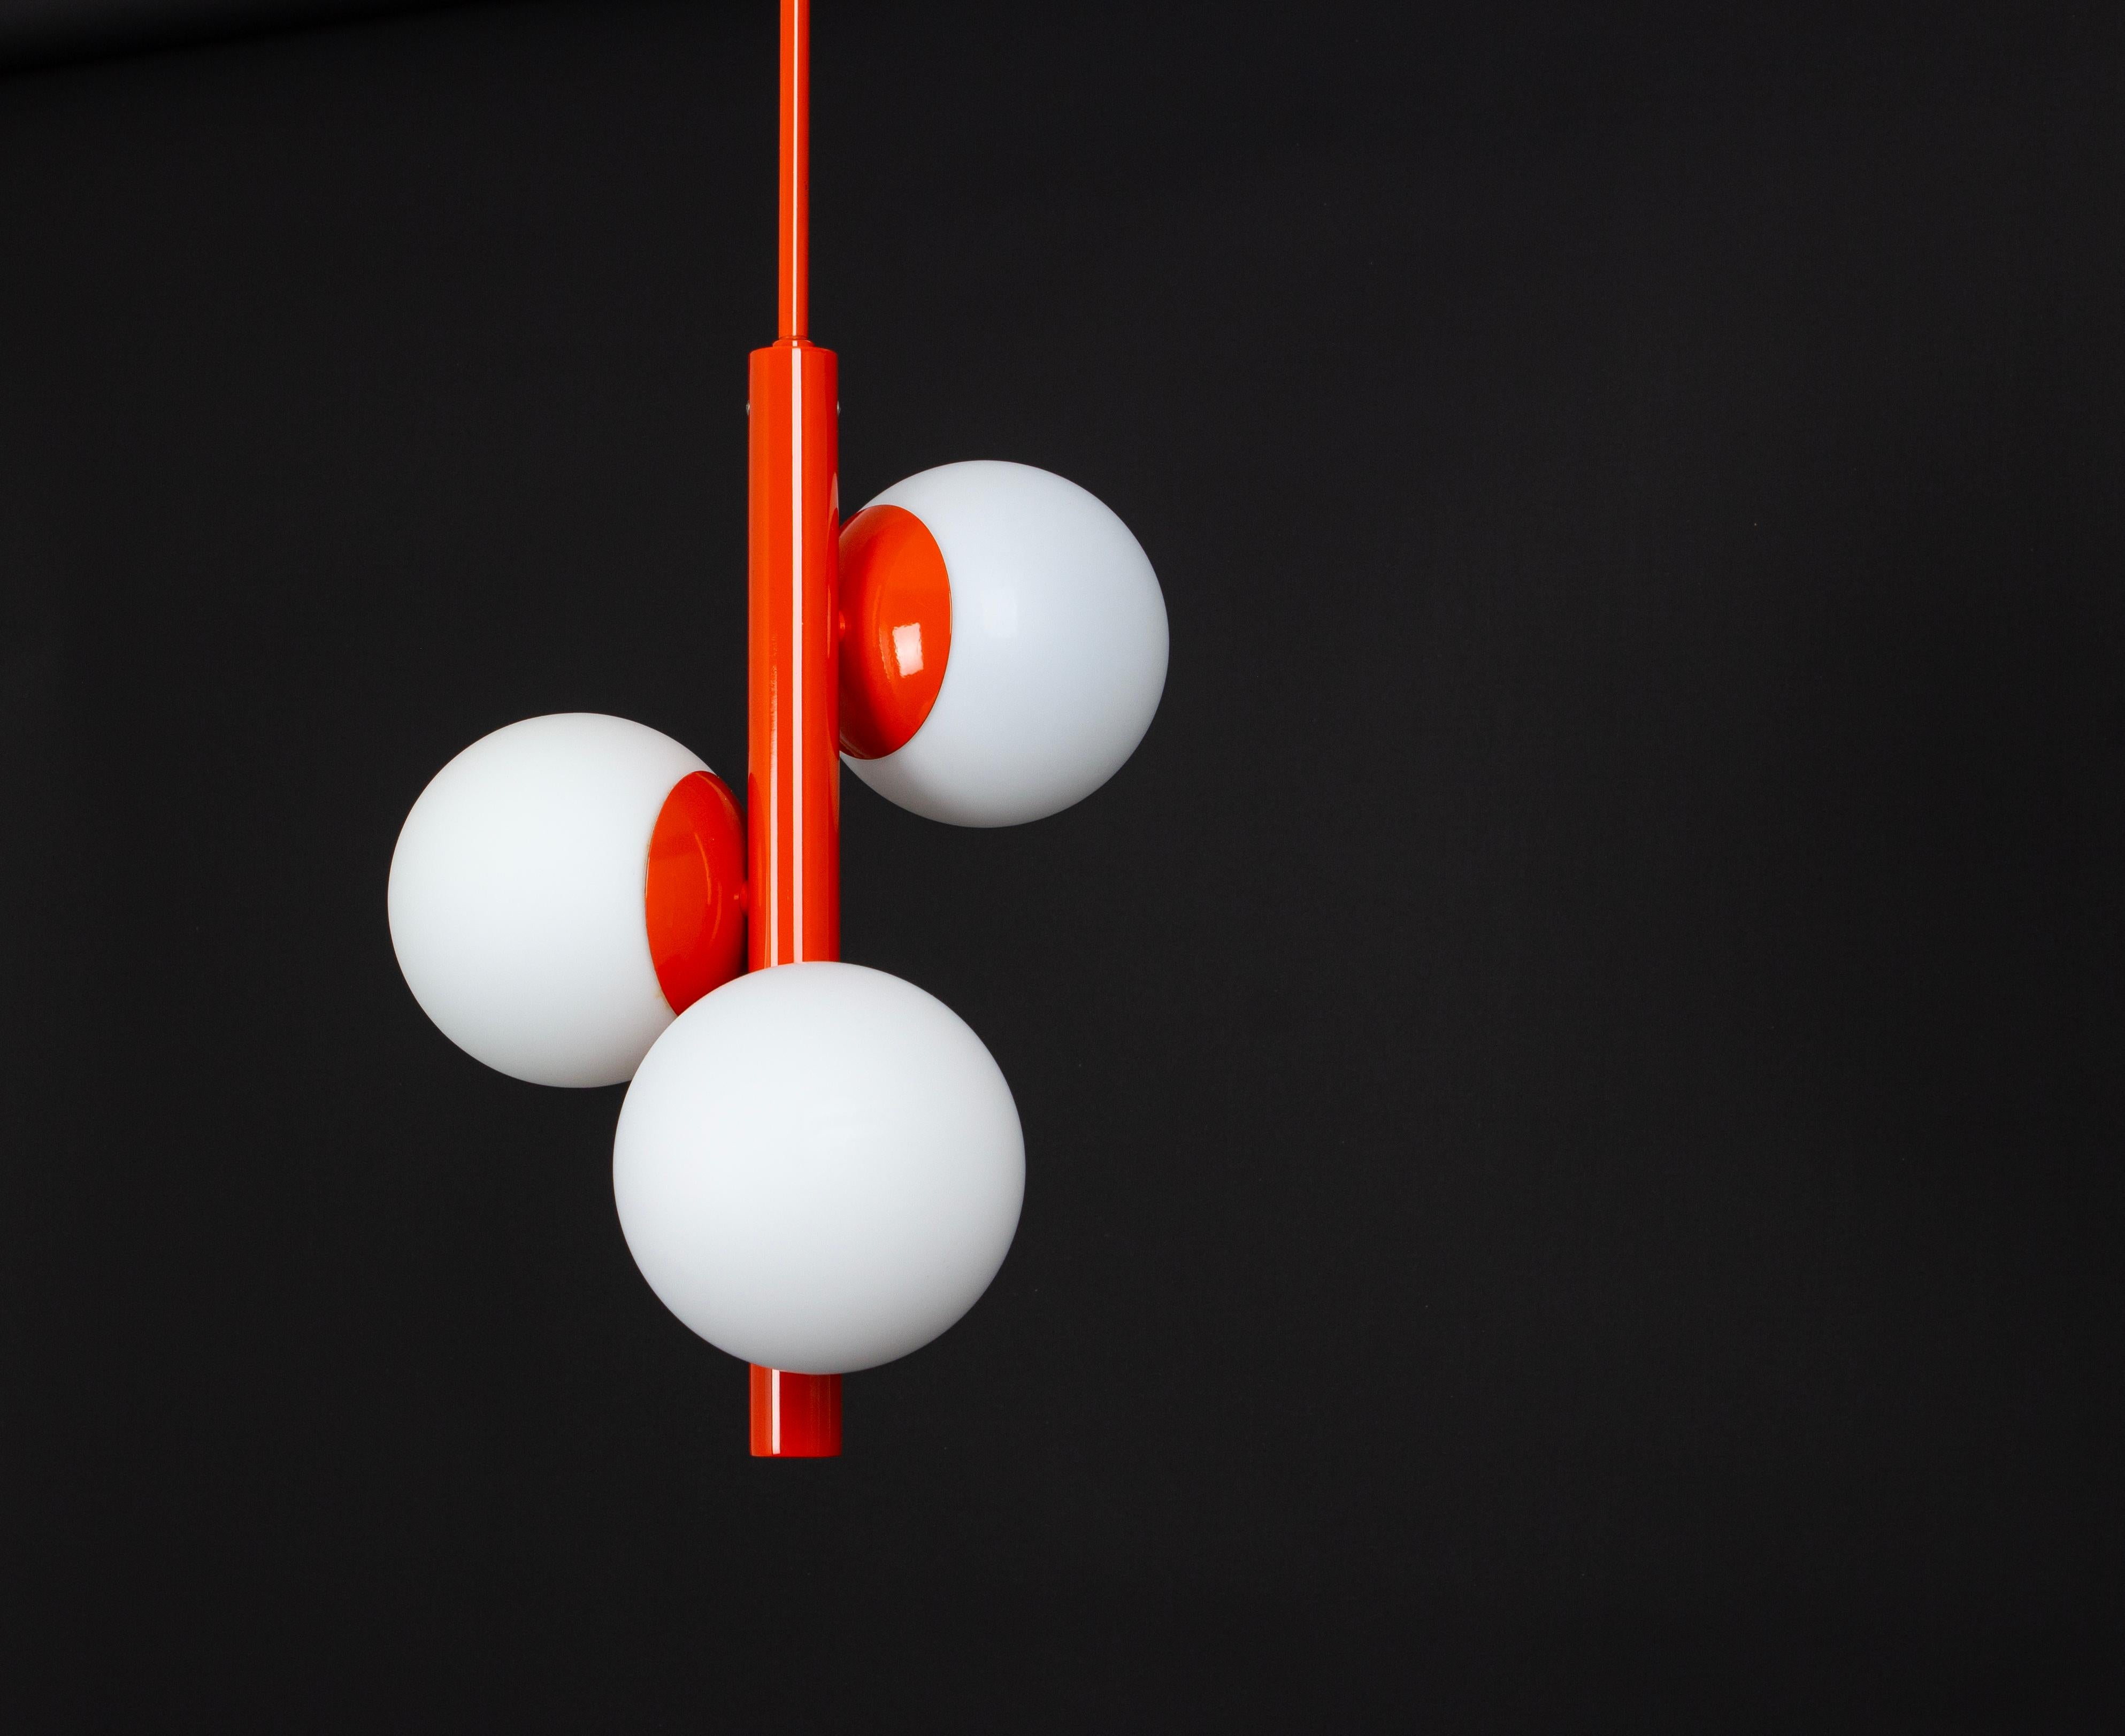 Merveilleuse lampe suspendue Sputnik fabriquée par Kaiser Leuchten, Allemagne, vers 1970-1979.
Grand lustre en forme d'Atomium avec 3 pièces en verre opale.
Ce luminaire exquis arbore une couleur orange captivante qui ajoute une touche de